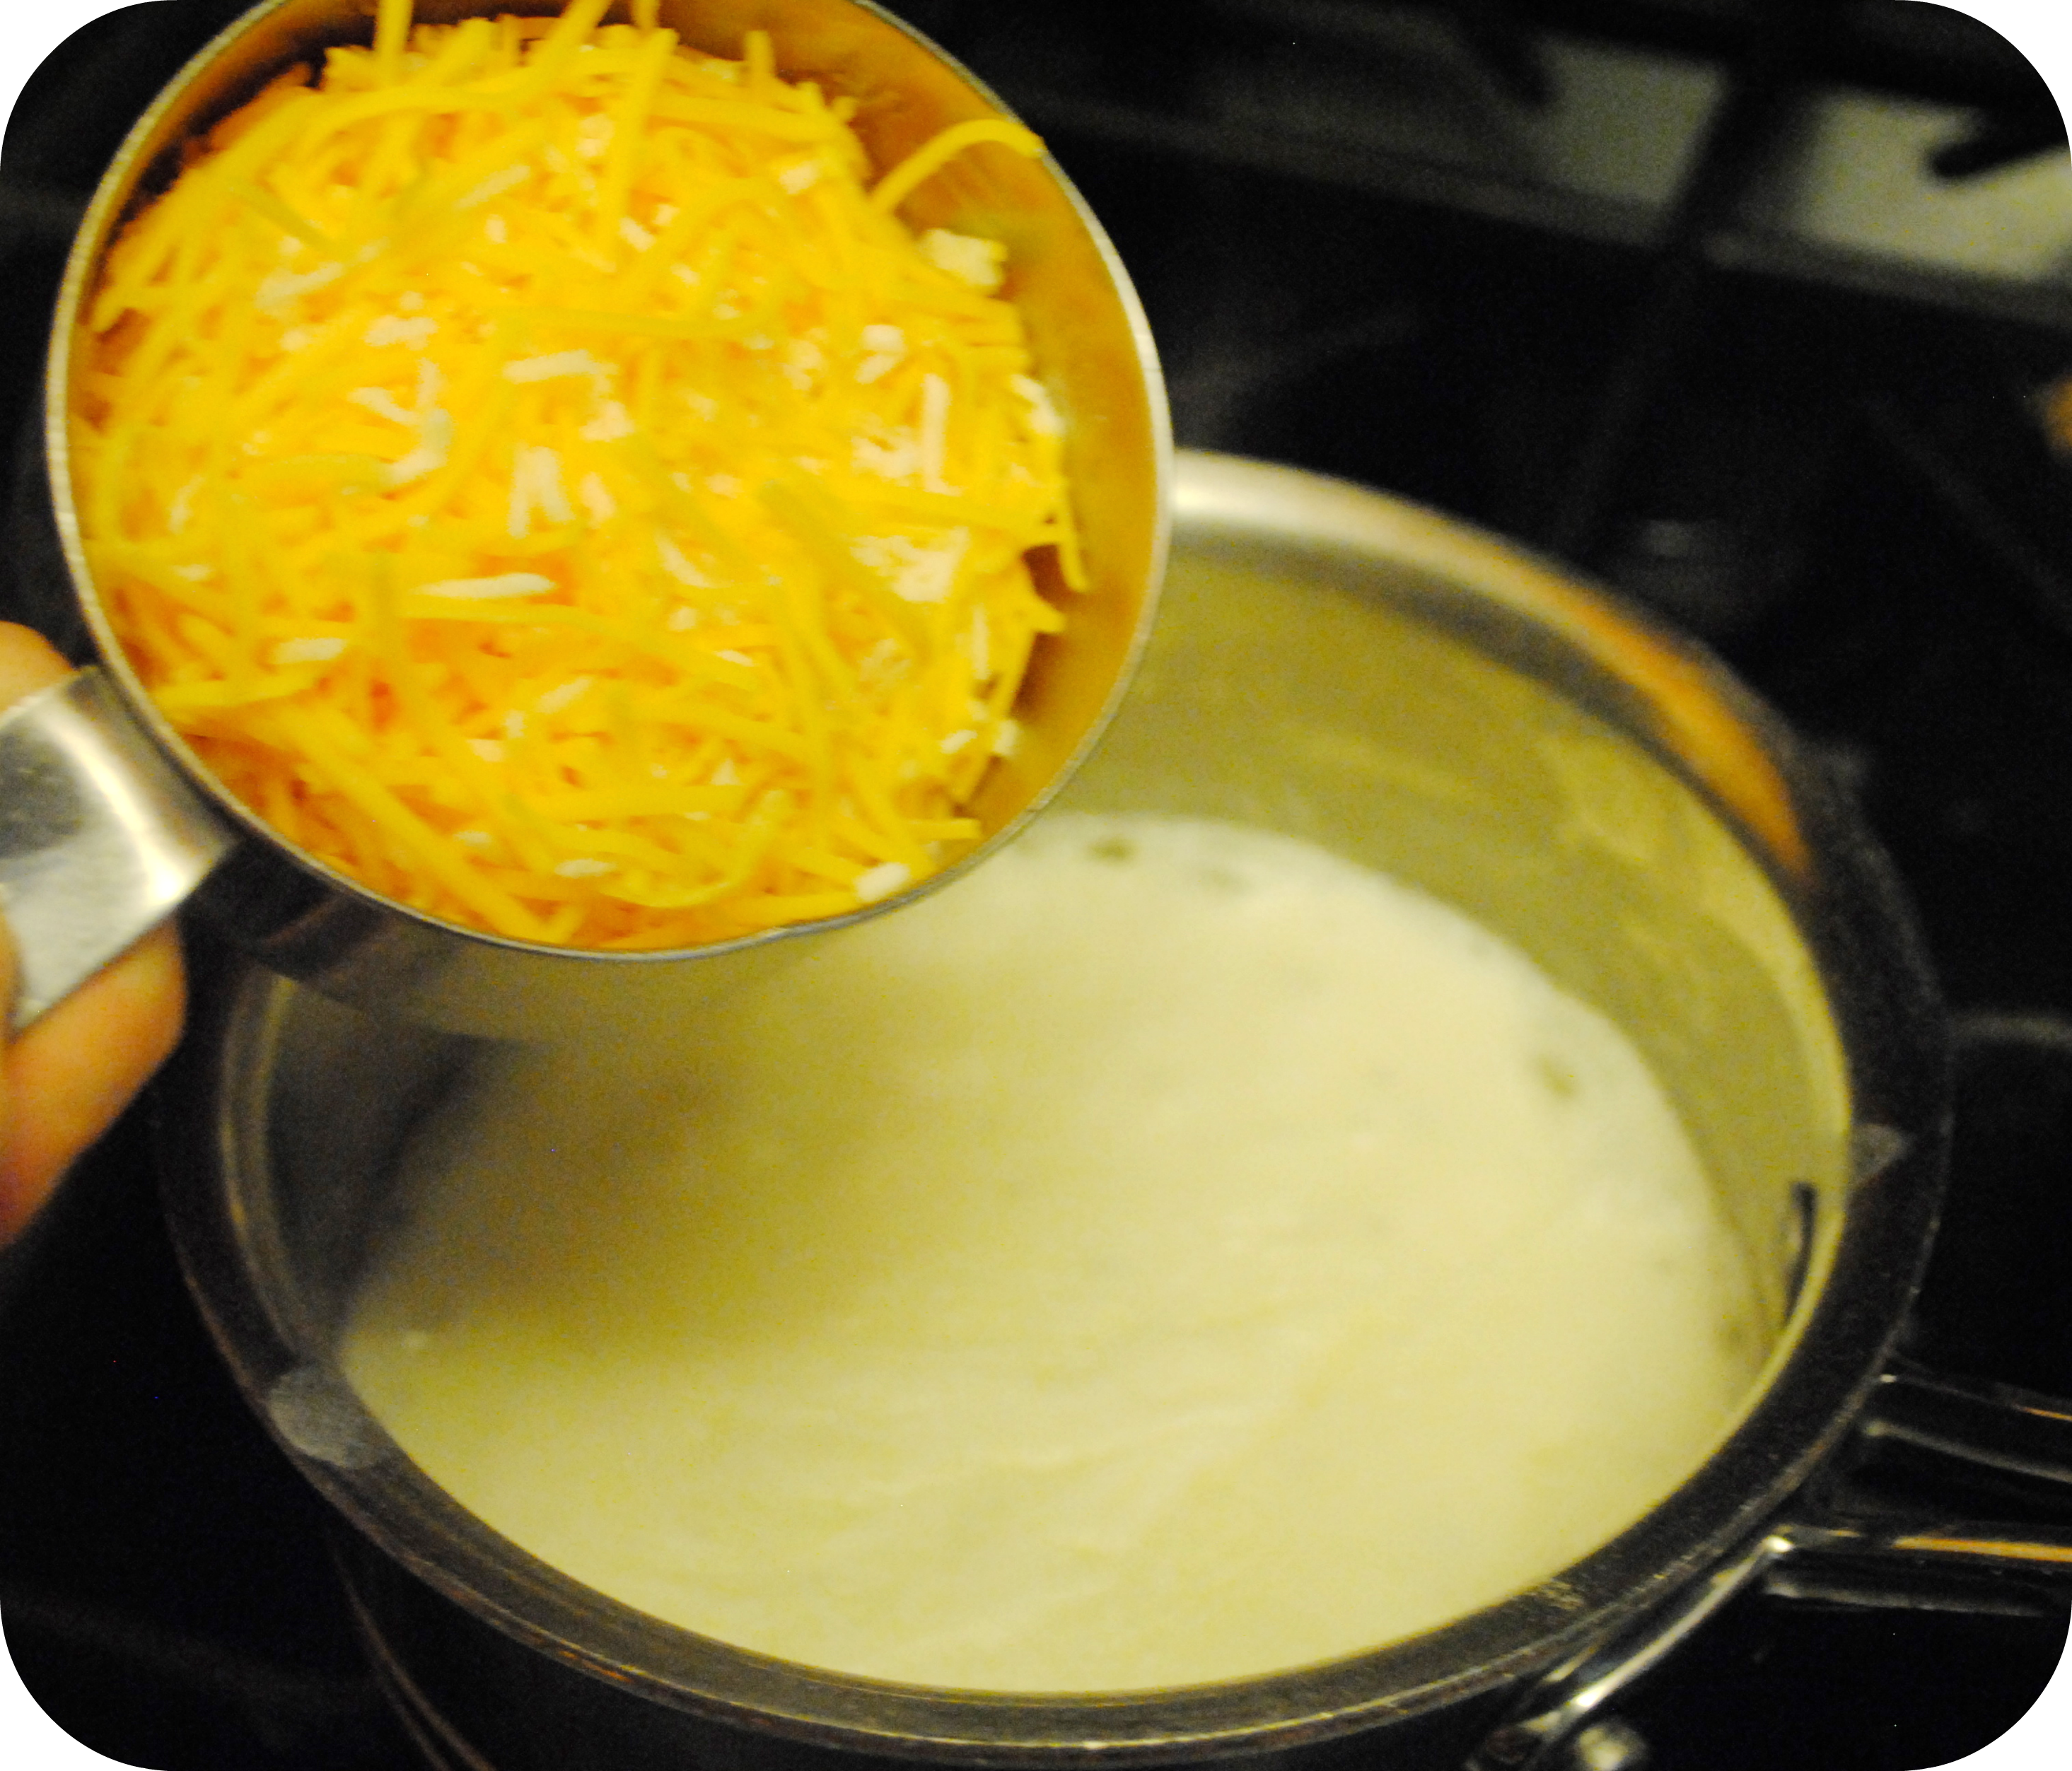 adding cheddar cheese